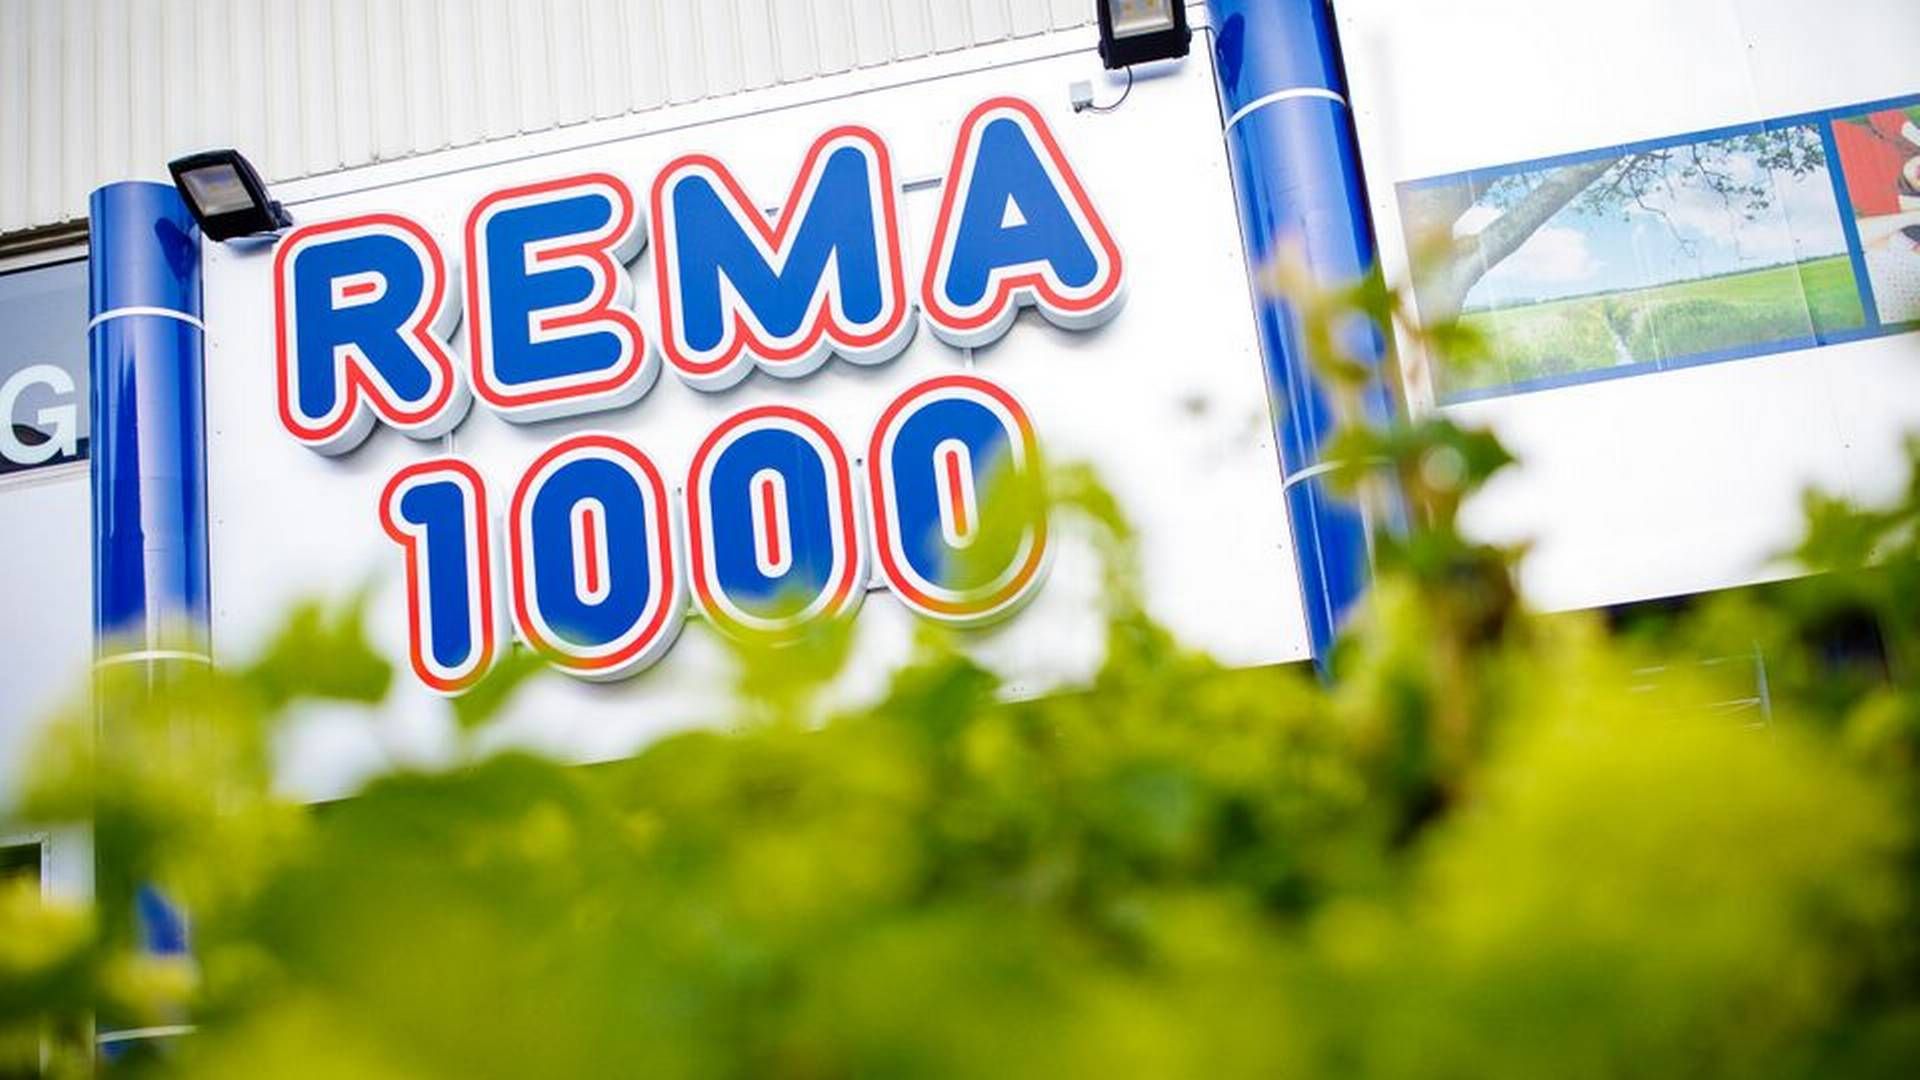 Rema 1000 overtog 113 butikker ved overtagelsen af Aldi og vil åbne 70 nye butikker i år. | Foto: Rema 1000/pr